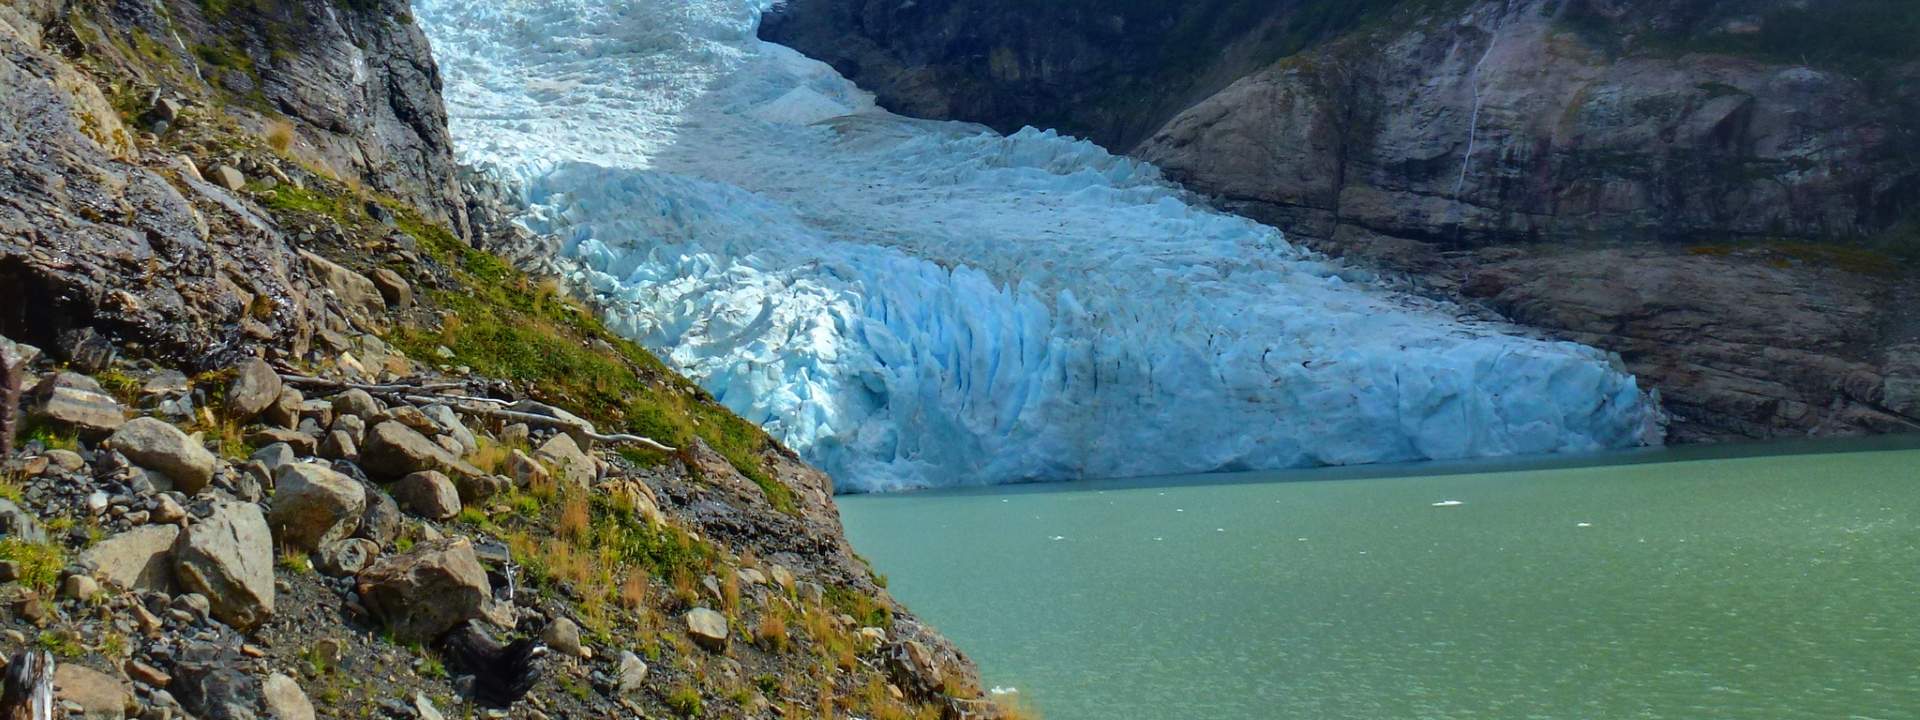 Zwischen dem Meer und Gletschern: Segeln Sie in den chilenischen Fjords